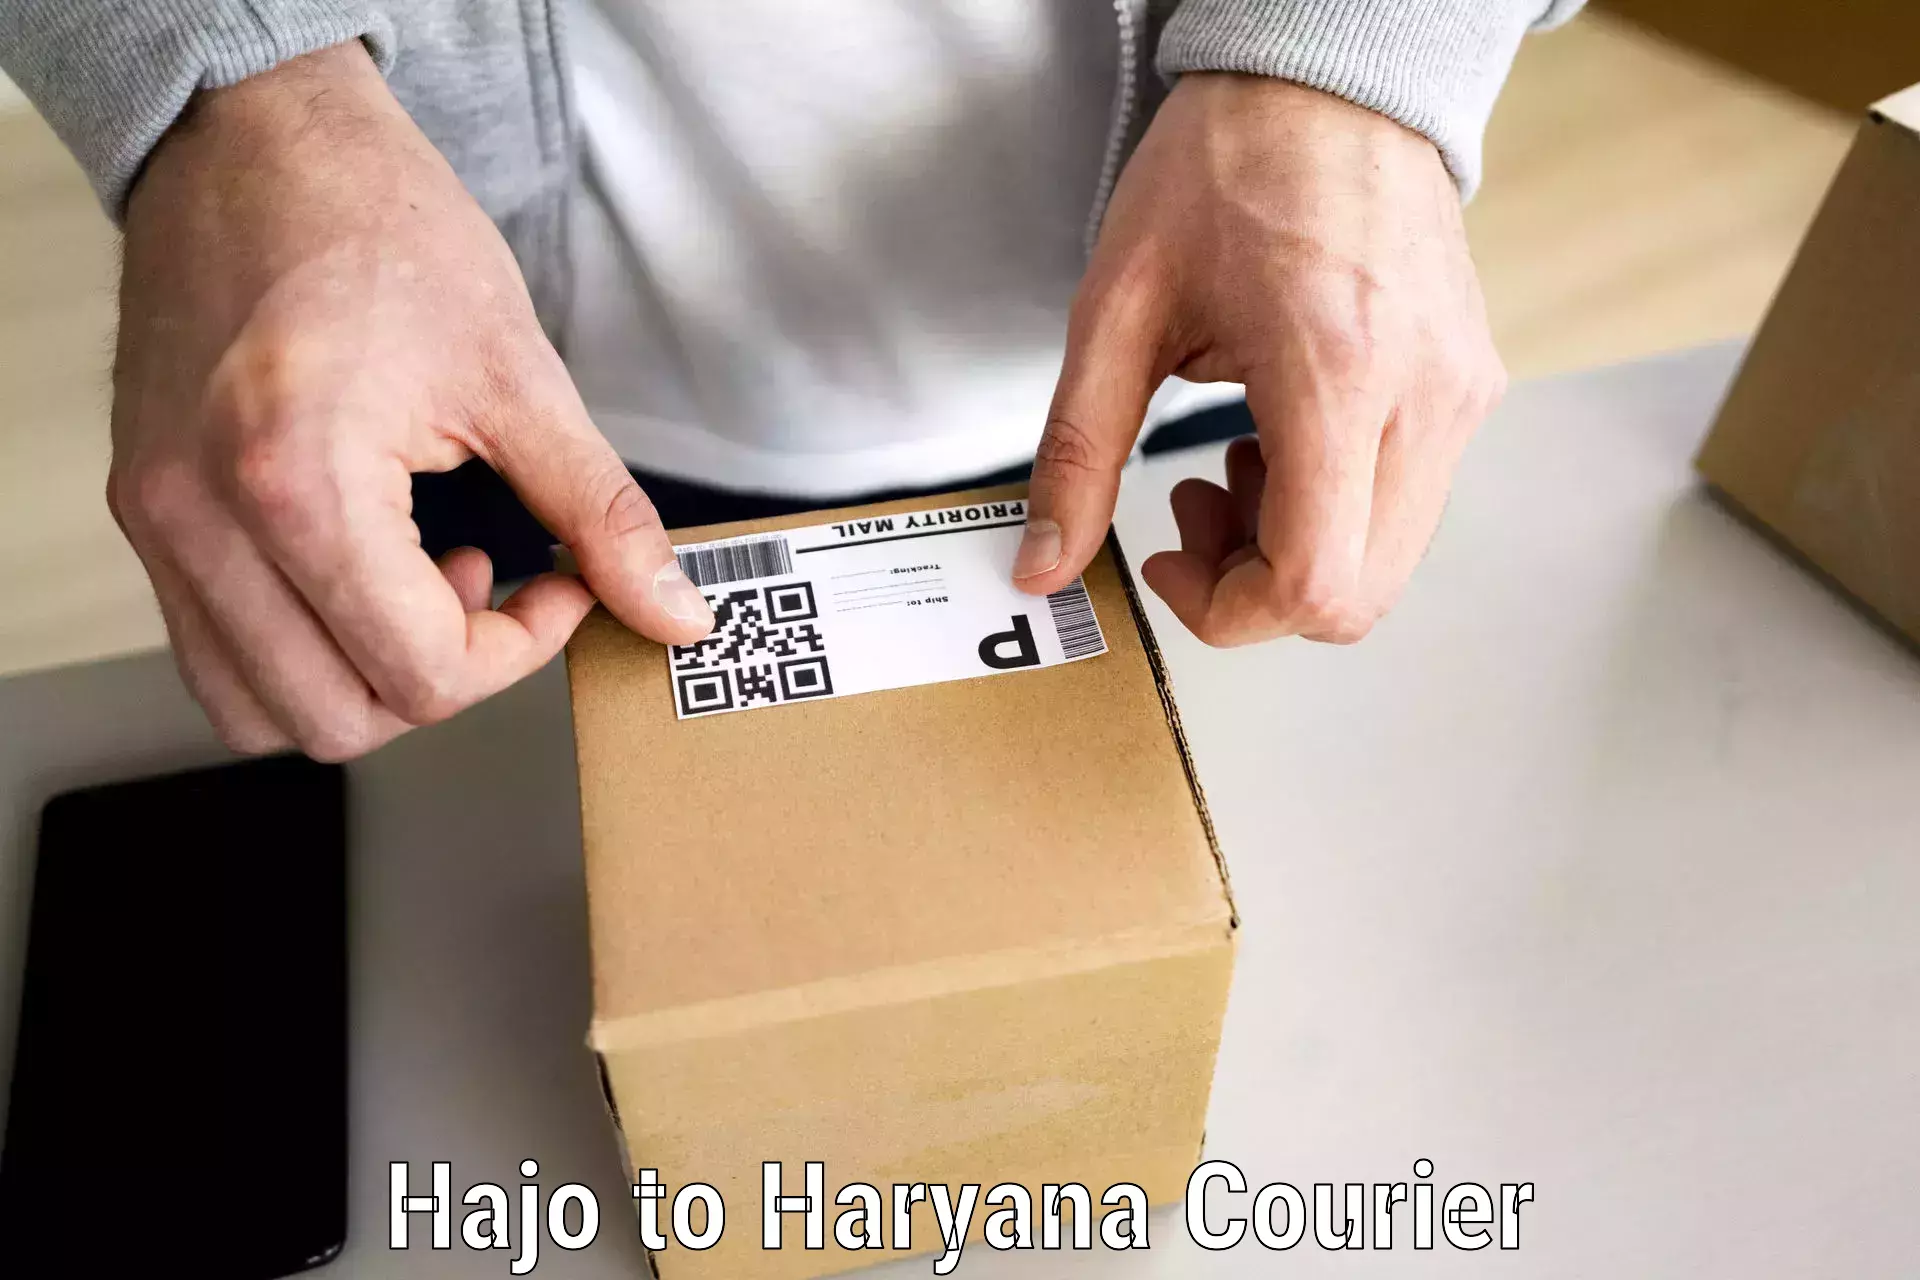 Professional movers Hajo to Haryana